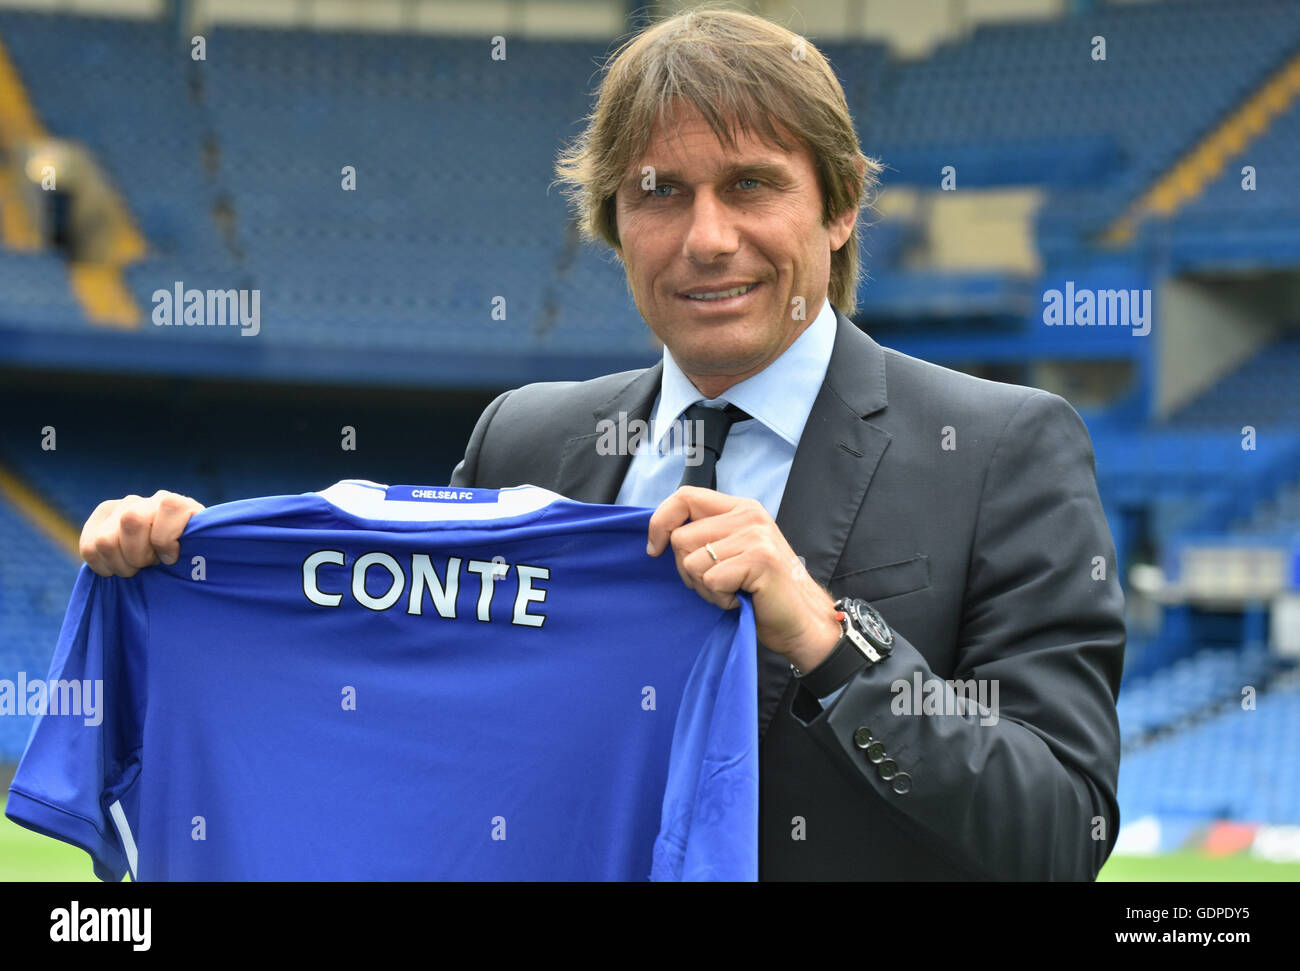 Antonio Conte, vorgestellt als der neue Manager von Chelsea, Chelsea Football Club, Stamford Bridge, London UK Stockfoto